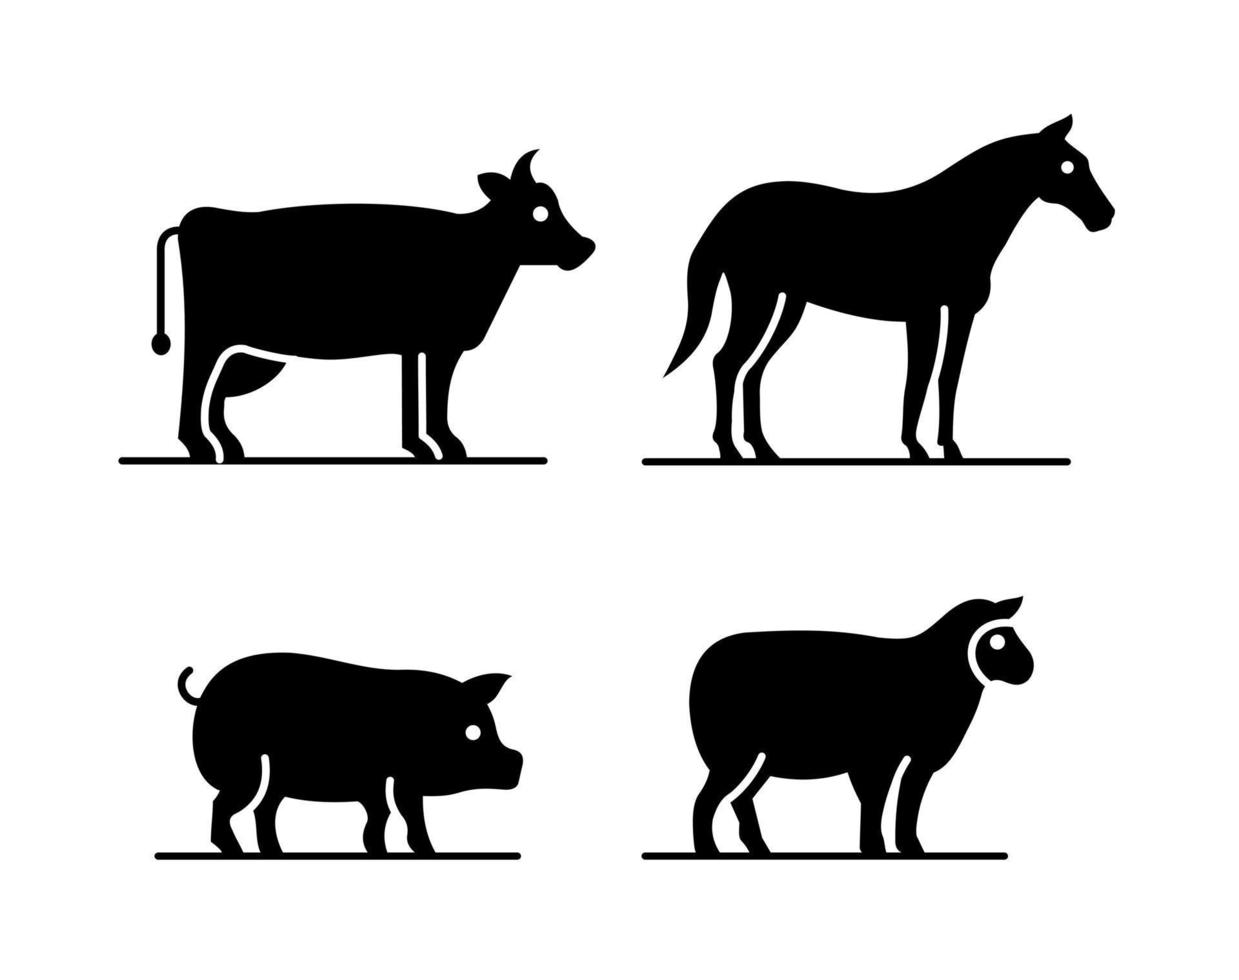 bauernhoftiere, kuh, schwein, pferd und schaf. Symbole in schwarz. Vektor-Illustration isoliert auf weißem Hintergrund vektor